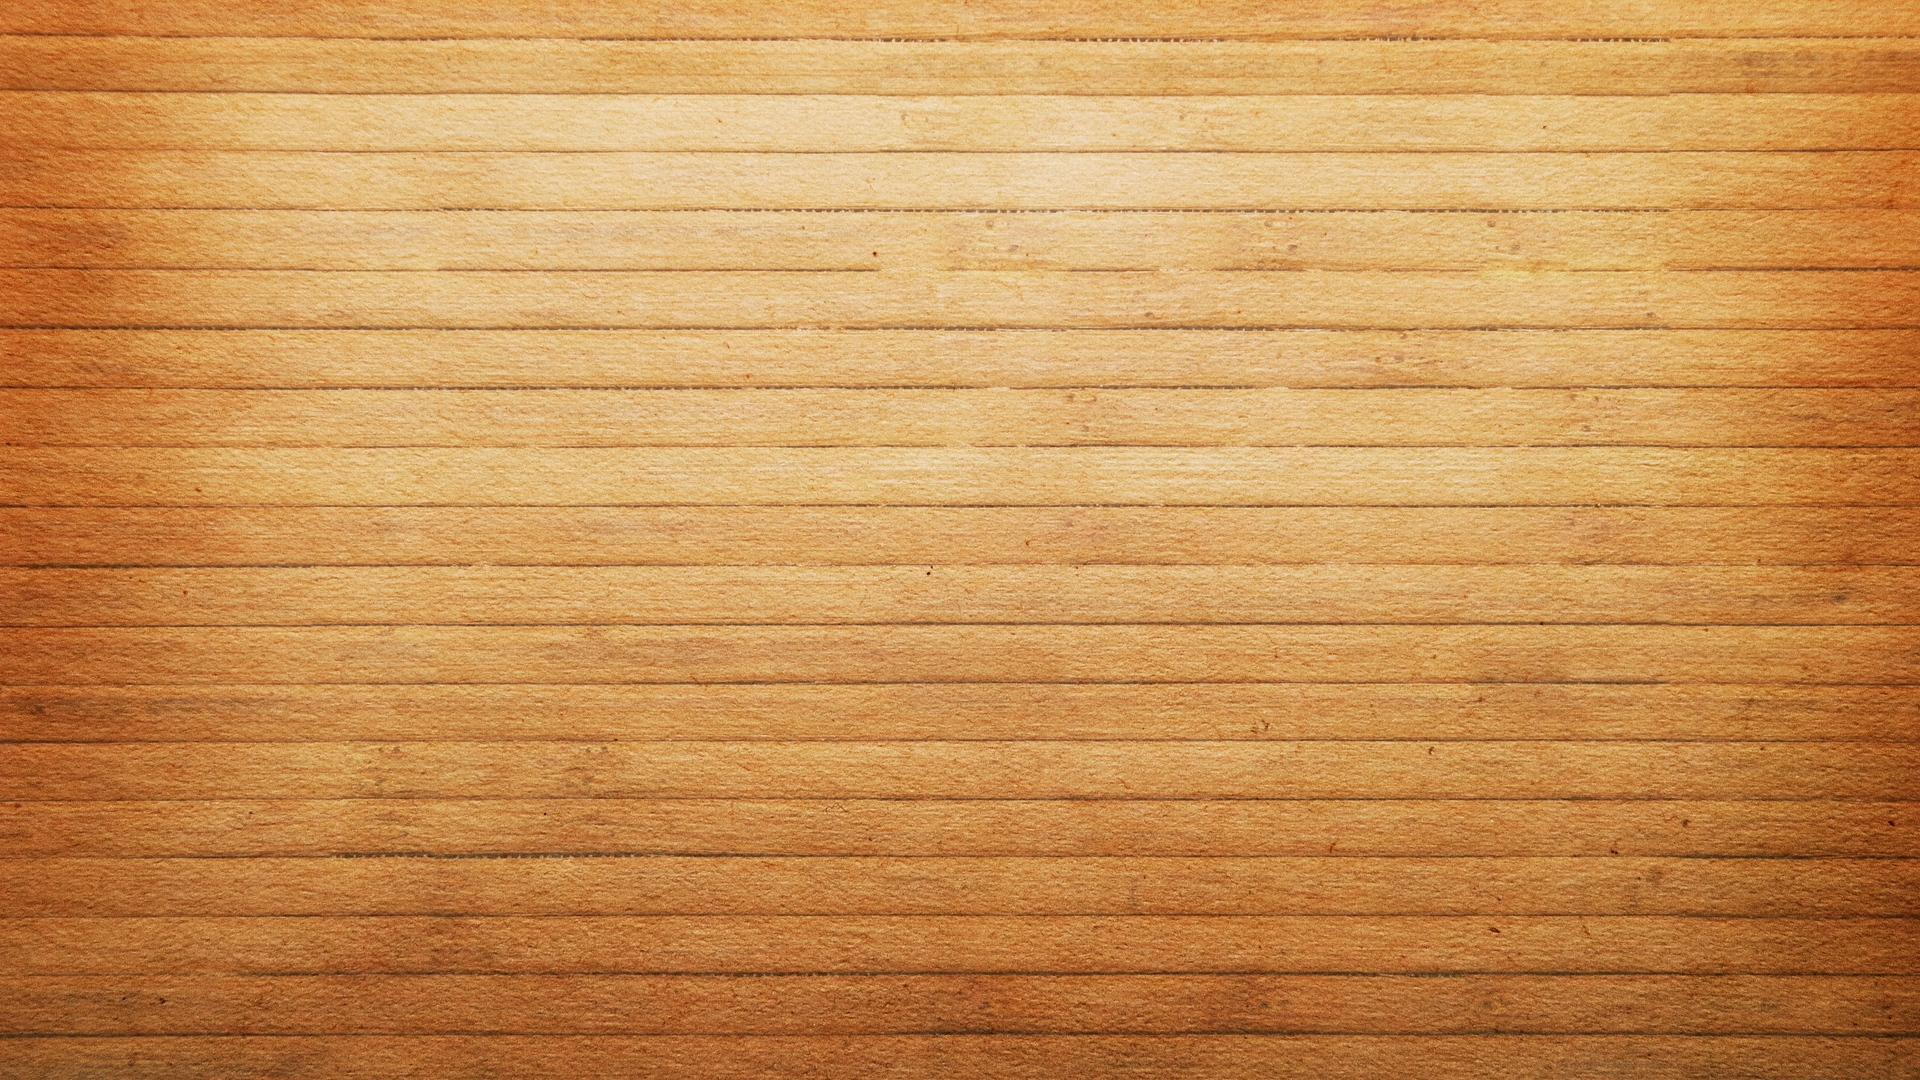 49 Wood Wallpaper 1080p